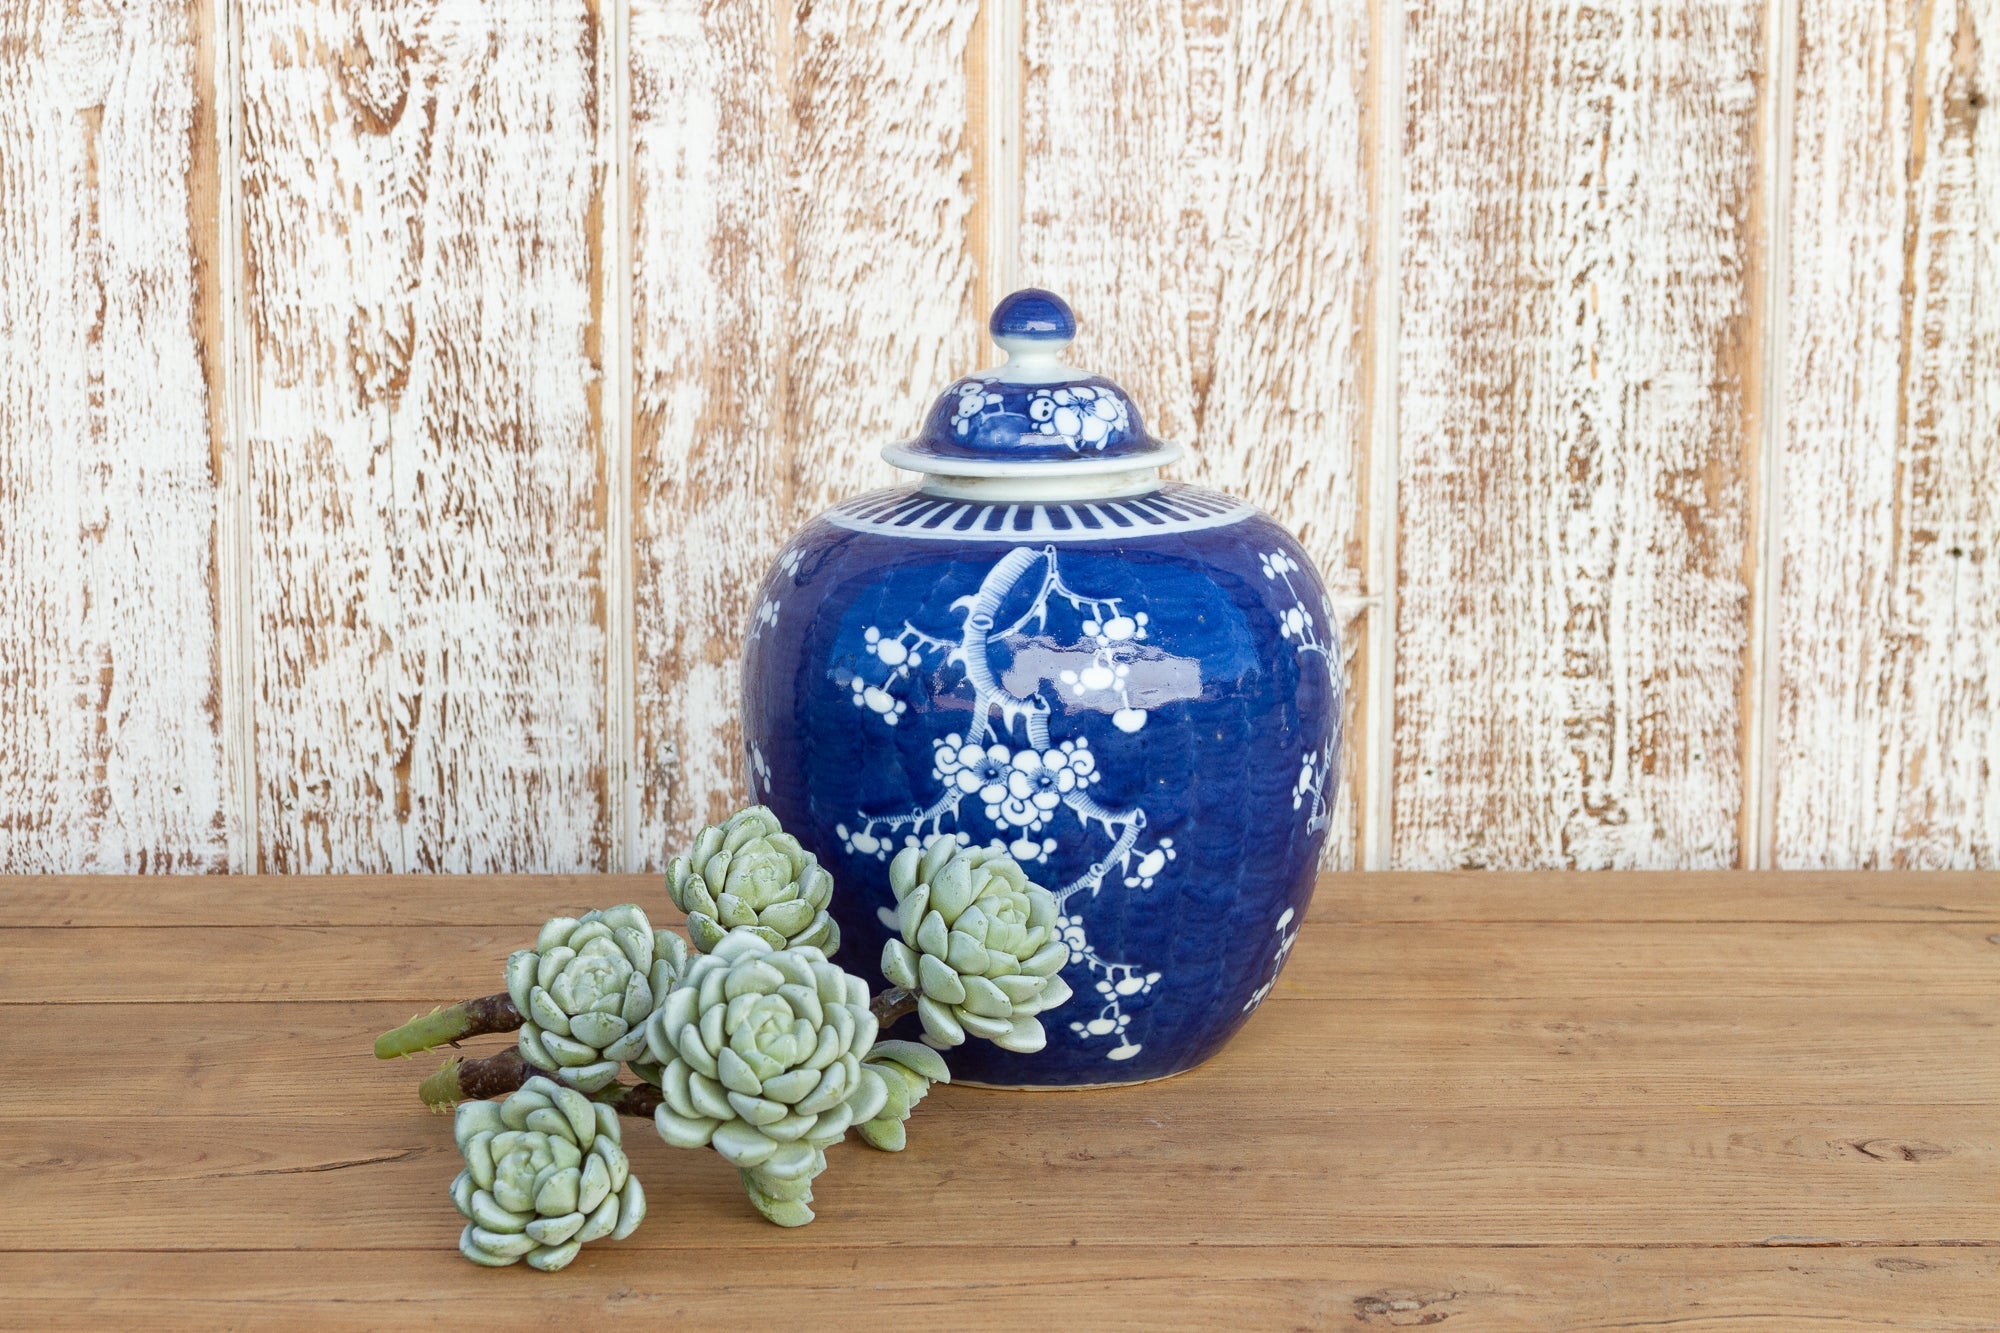 DE-COR | Ispirazione globale, Incantevole vaso asiatico con coperchio floreale blu (commercio)